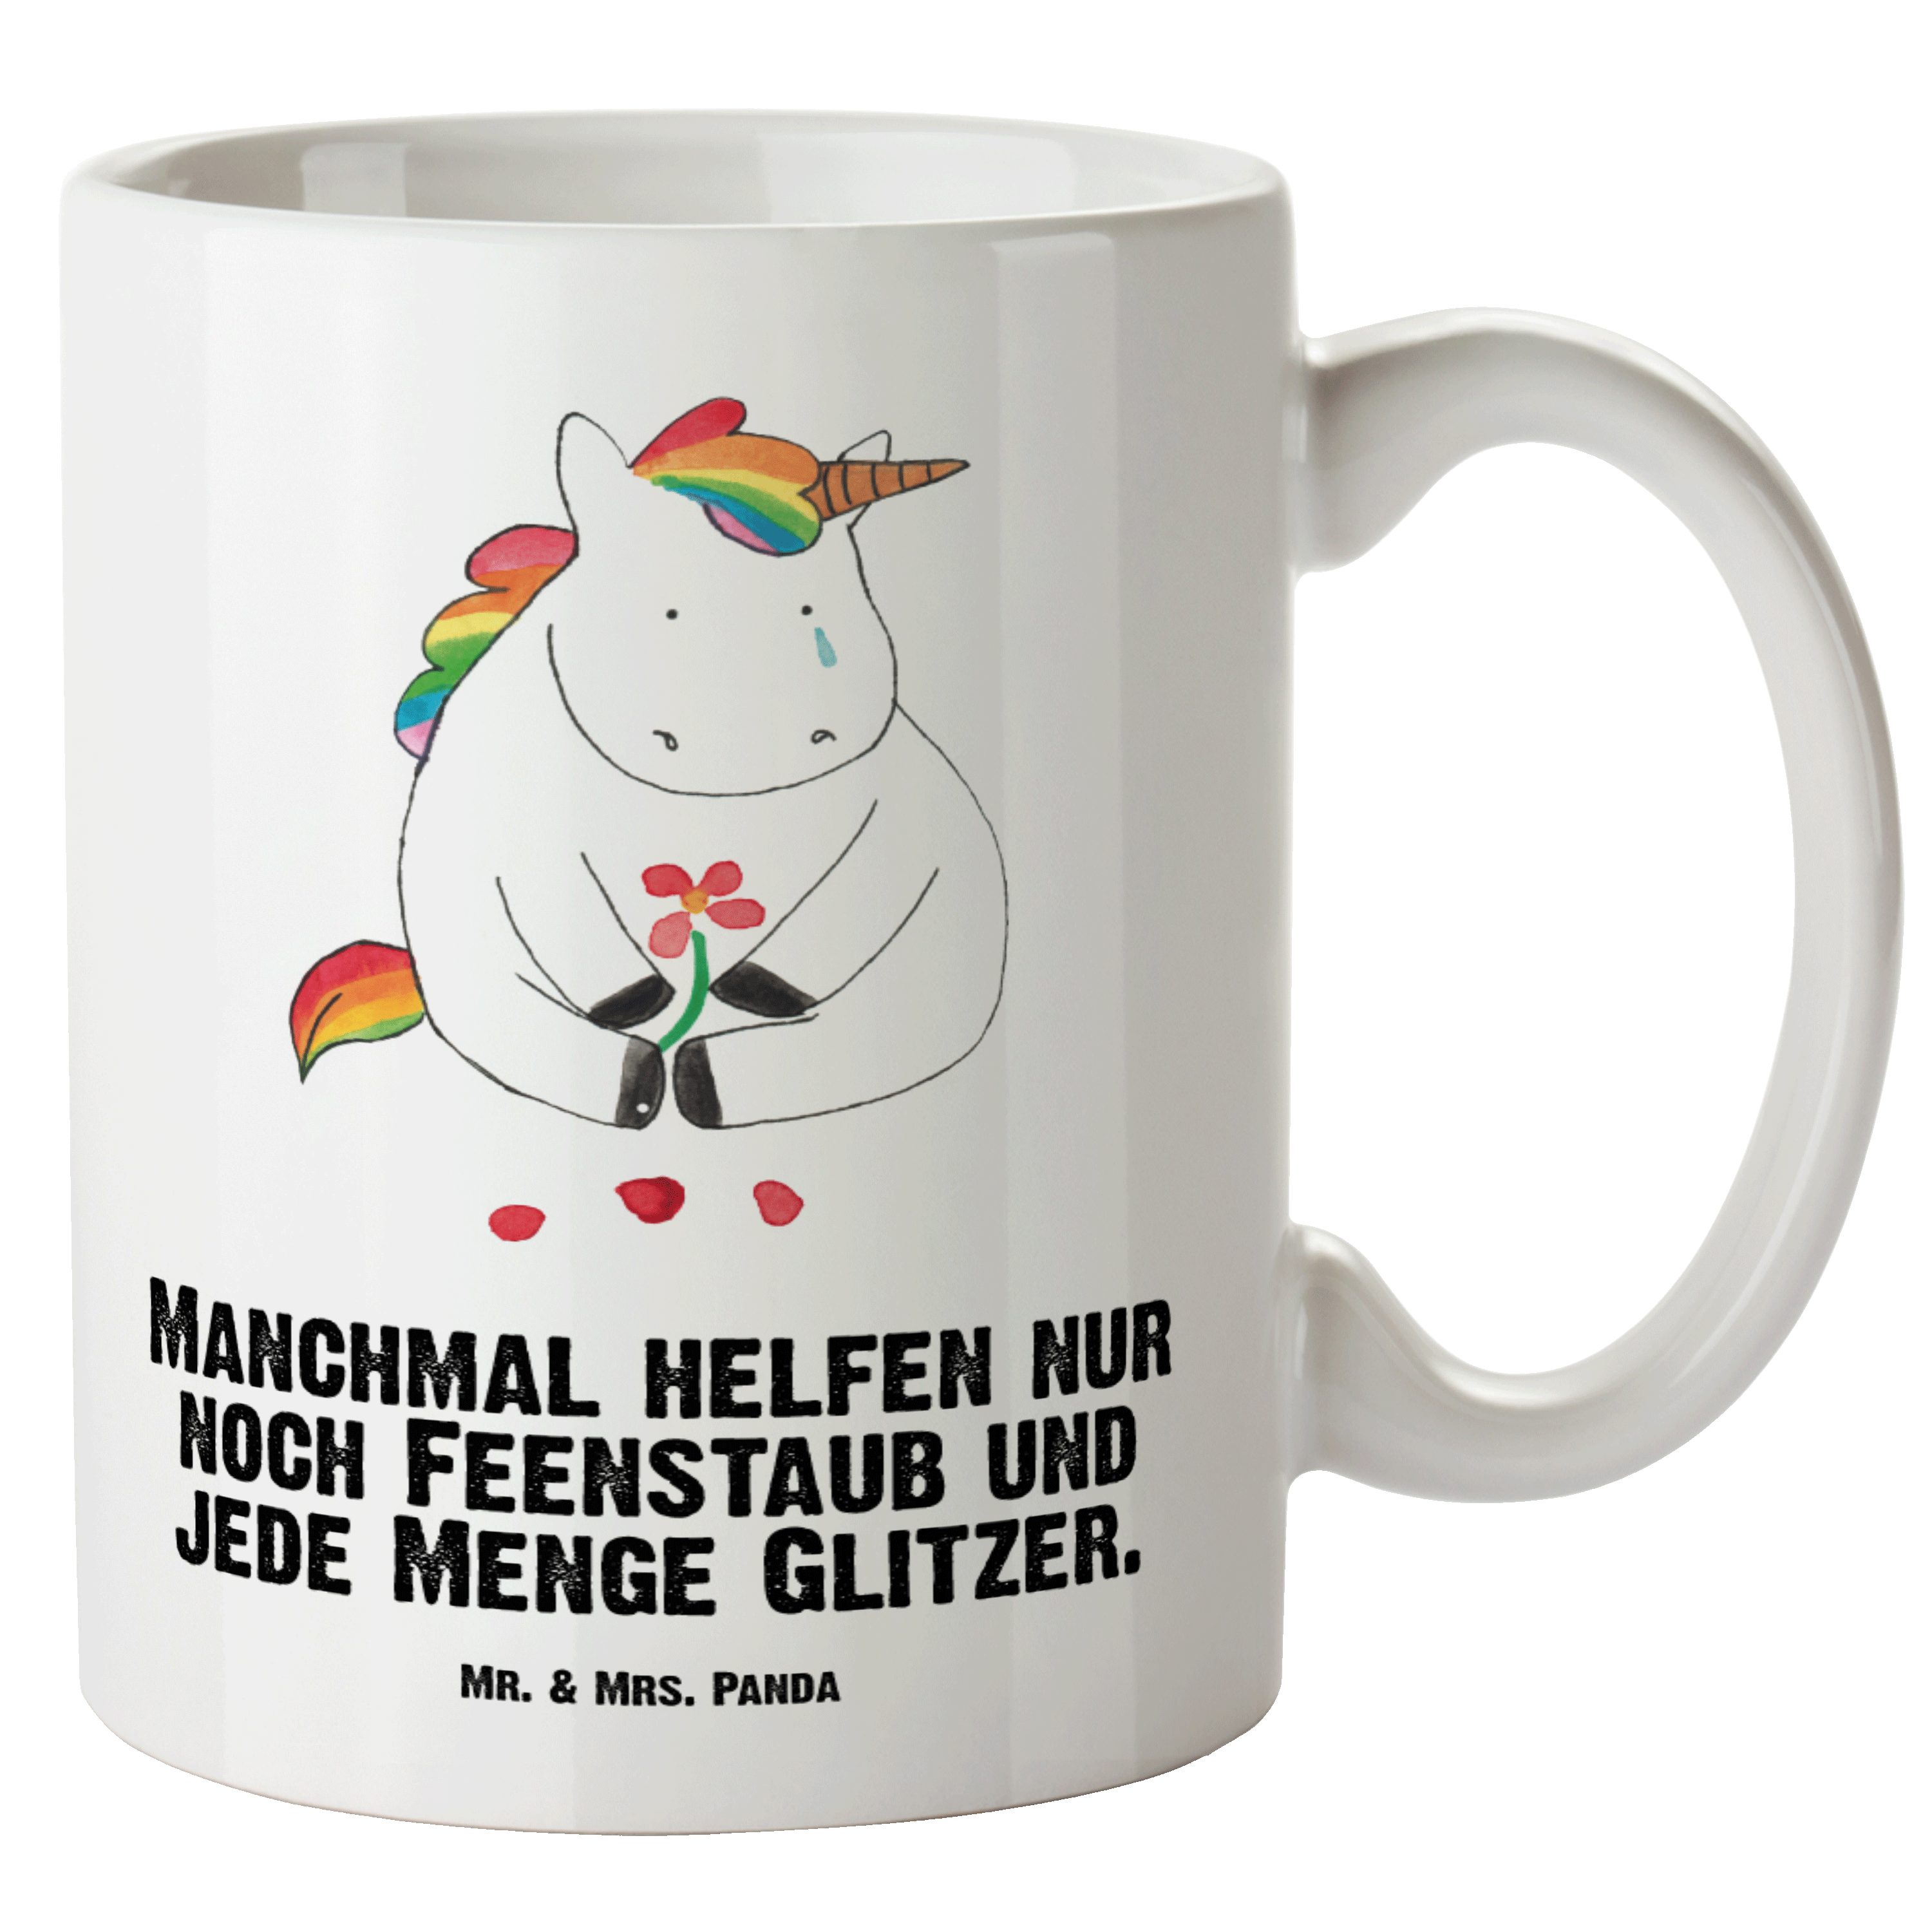 Mr. & Mrs. Panda Tasse Einhorn Traurig - Weiß - Geschenk, XL Tasse, Einhorn Deko, Jumbo Tass, XL Tasse Keramik